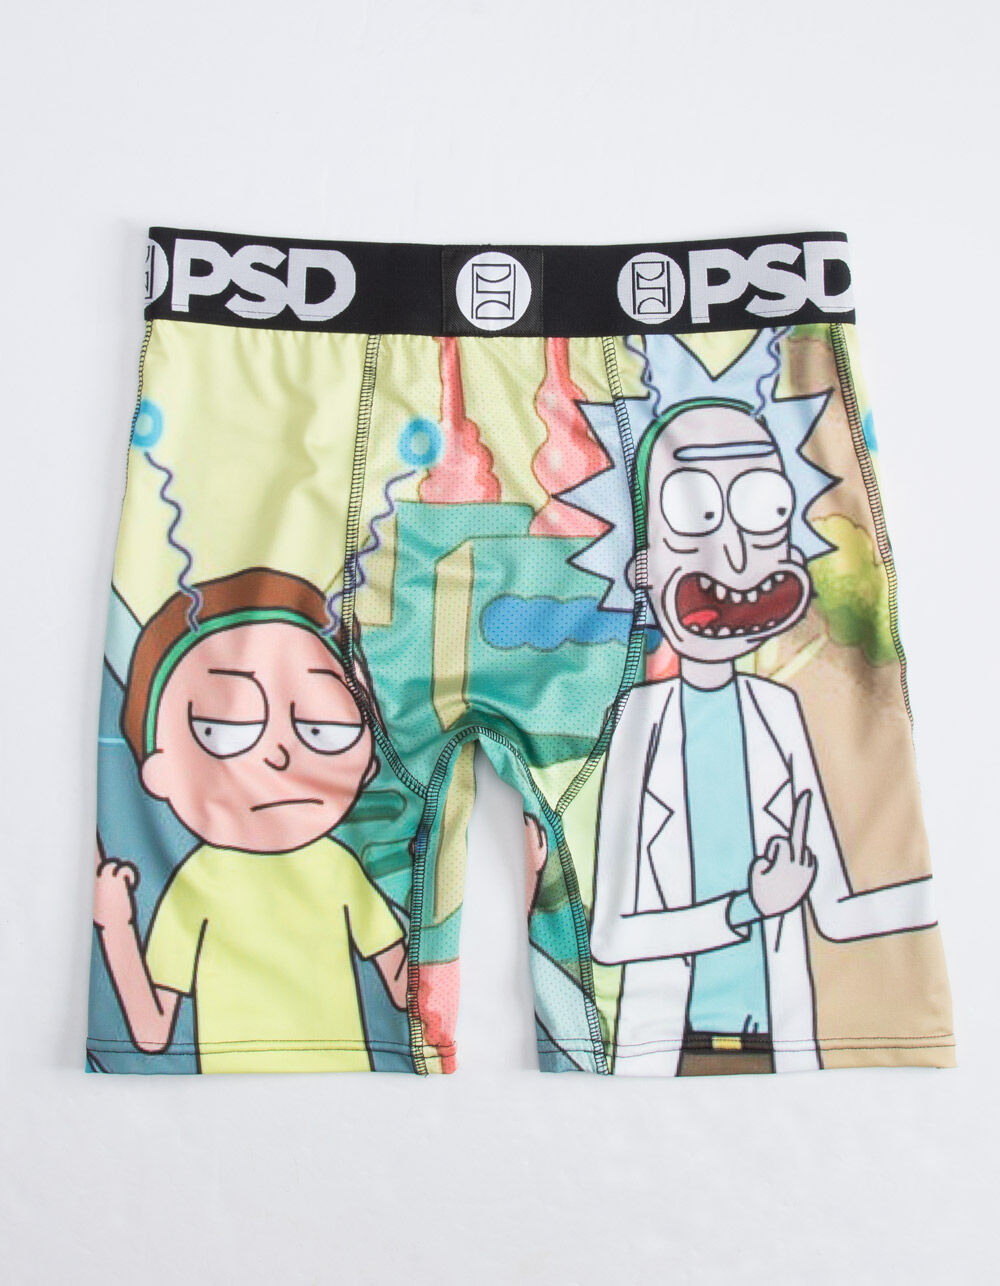 PSD Underwear Men's Rick & Morty Look Athletic Boxer Brief